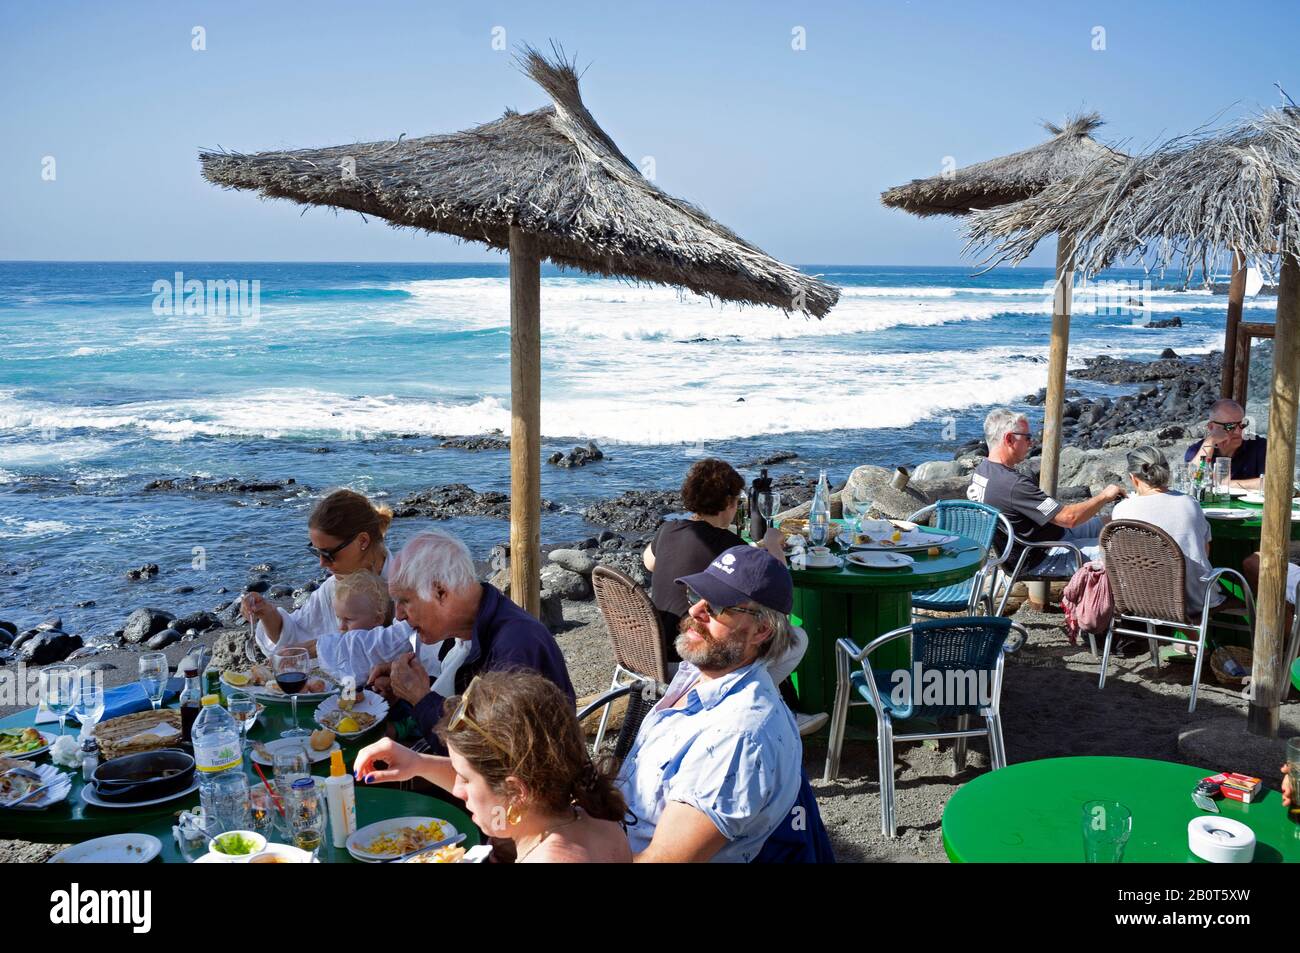 A popular fish restaurant in El Golfo, Lanzarote Stock Photo - Alamy